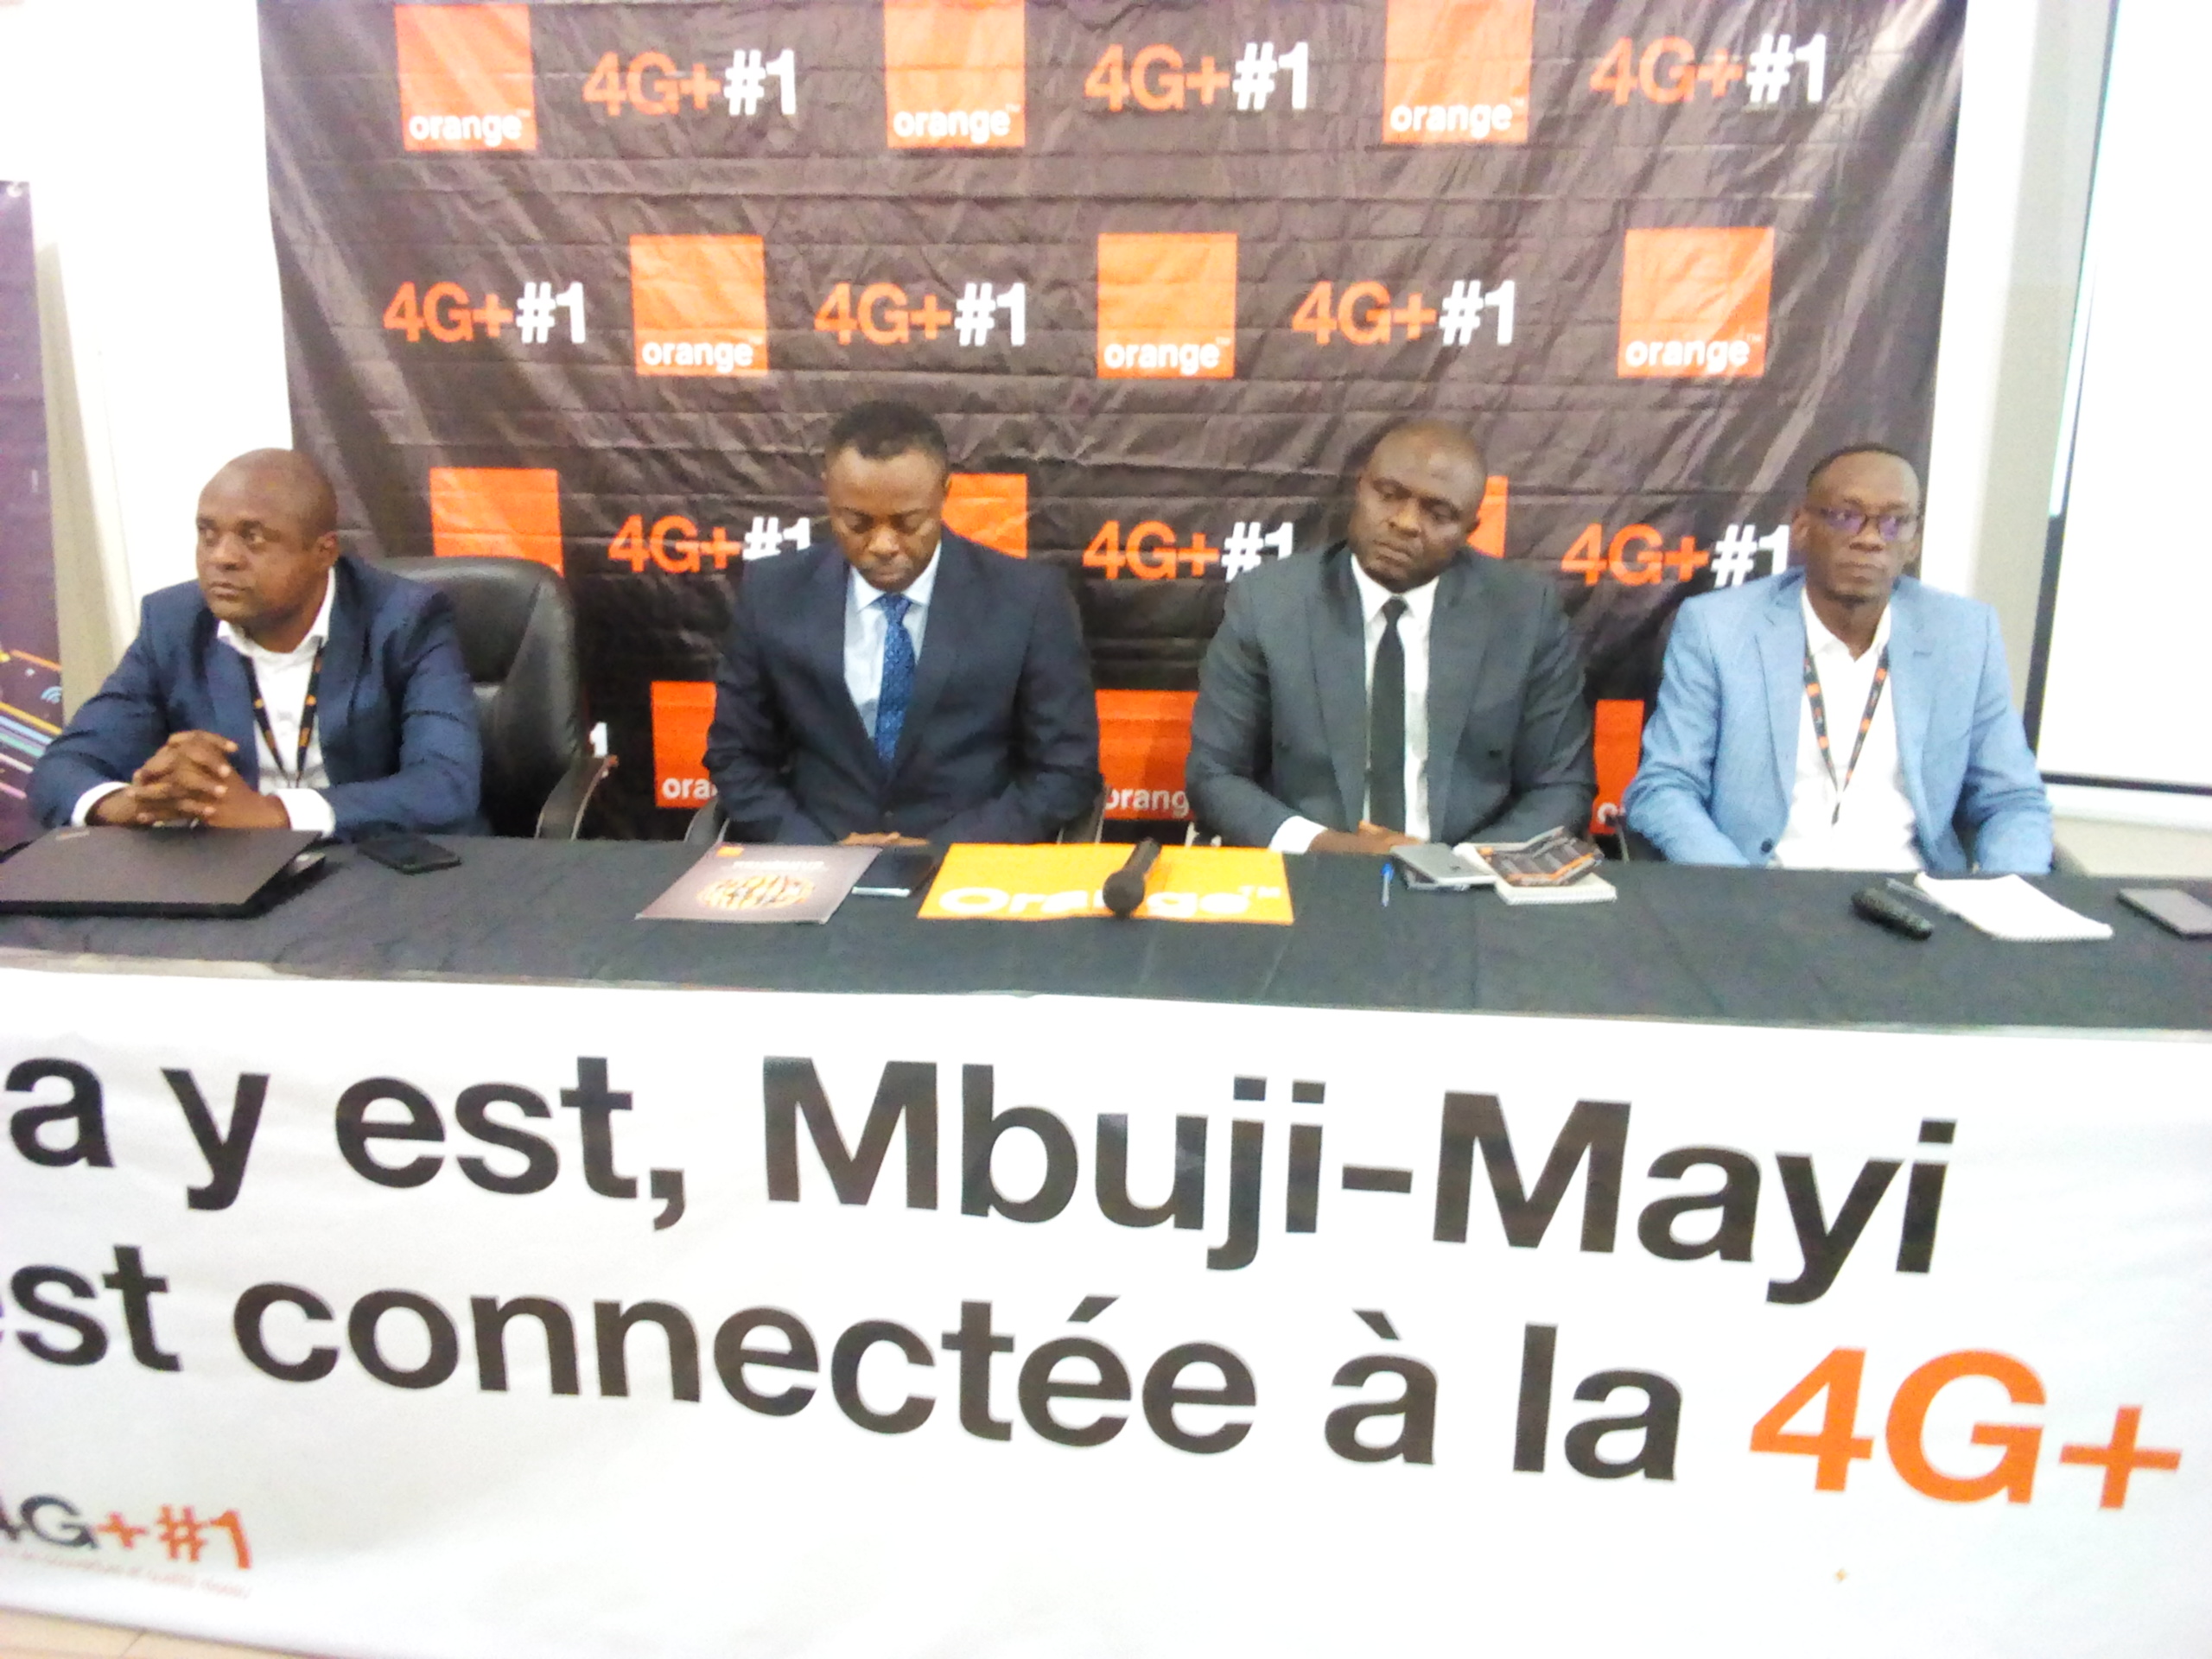 Kasai oriental : La société Orange lance la 4G+ à Mbujimayi